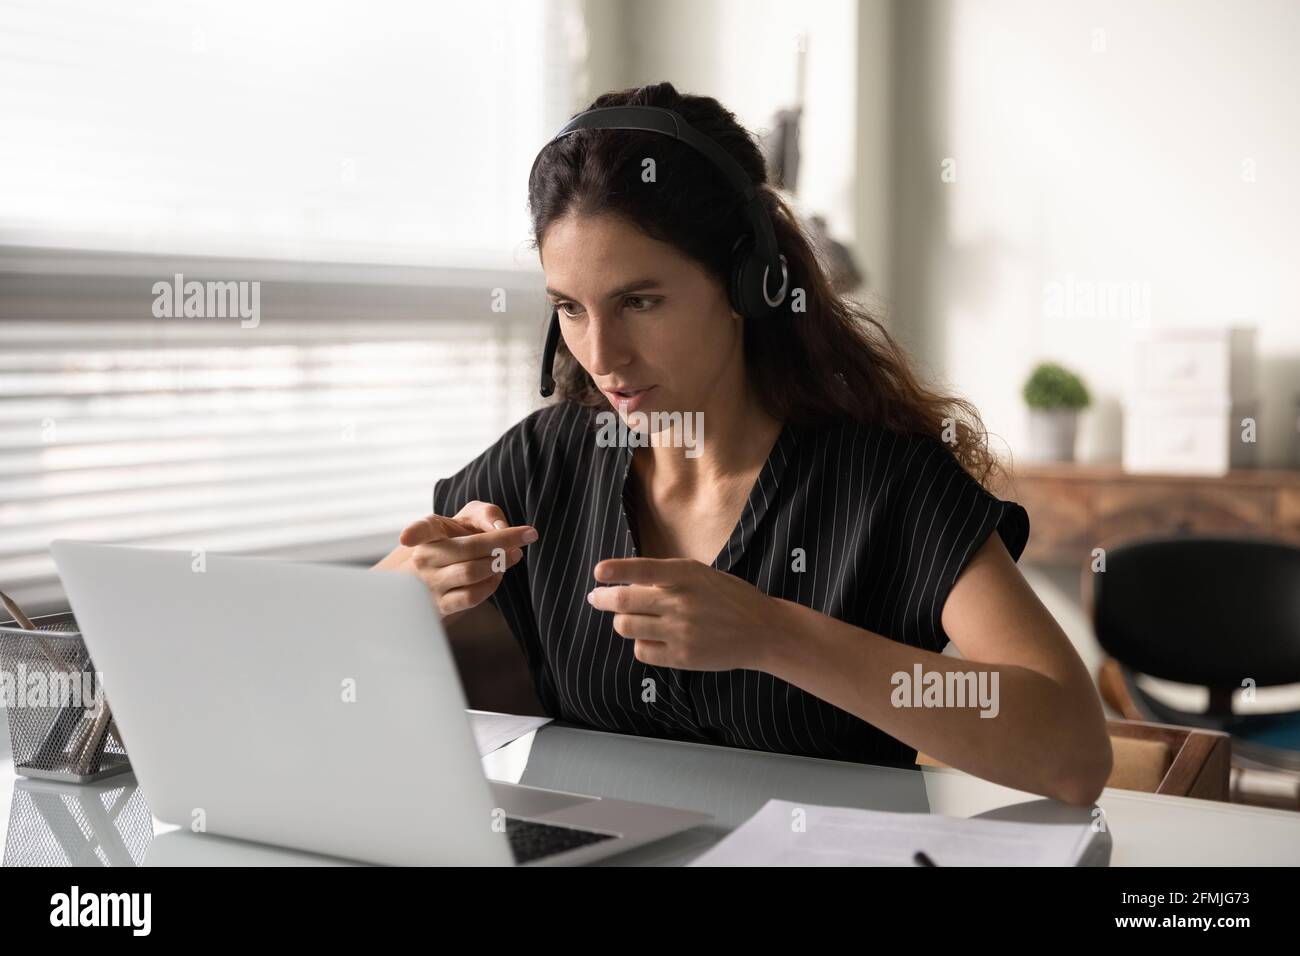 La donna concentrata in cuffia siede dal client di supporto del pc in remoto Foto Stock